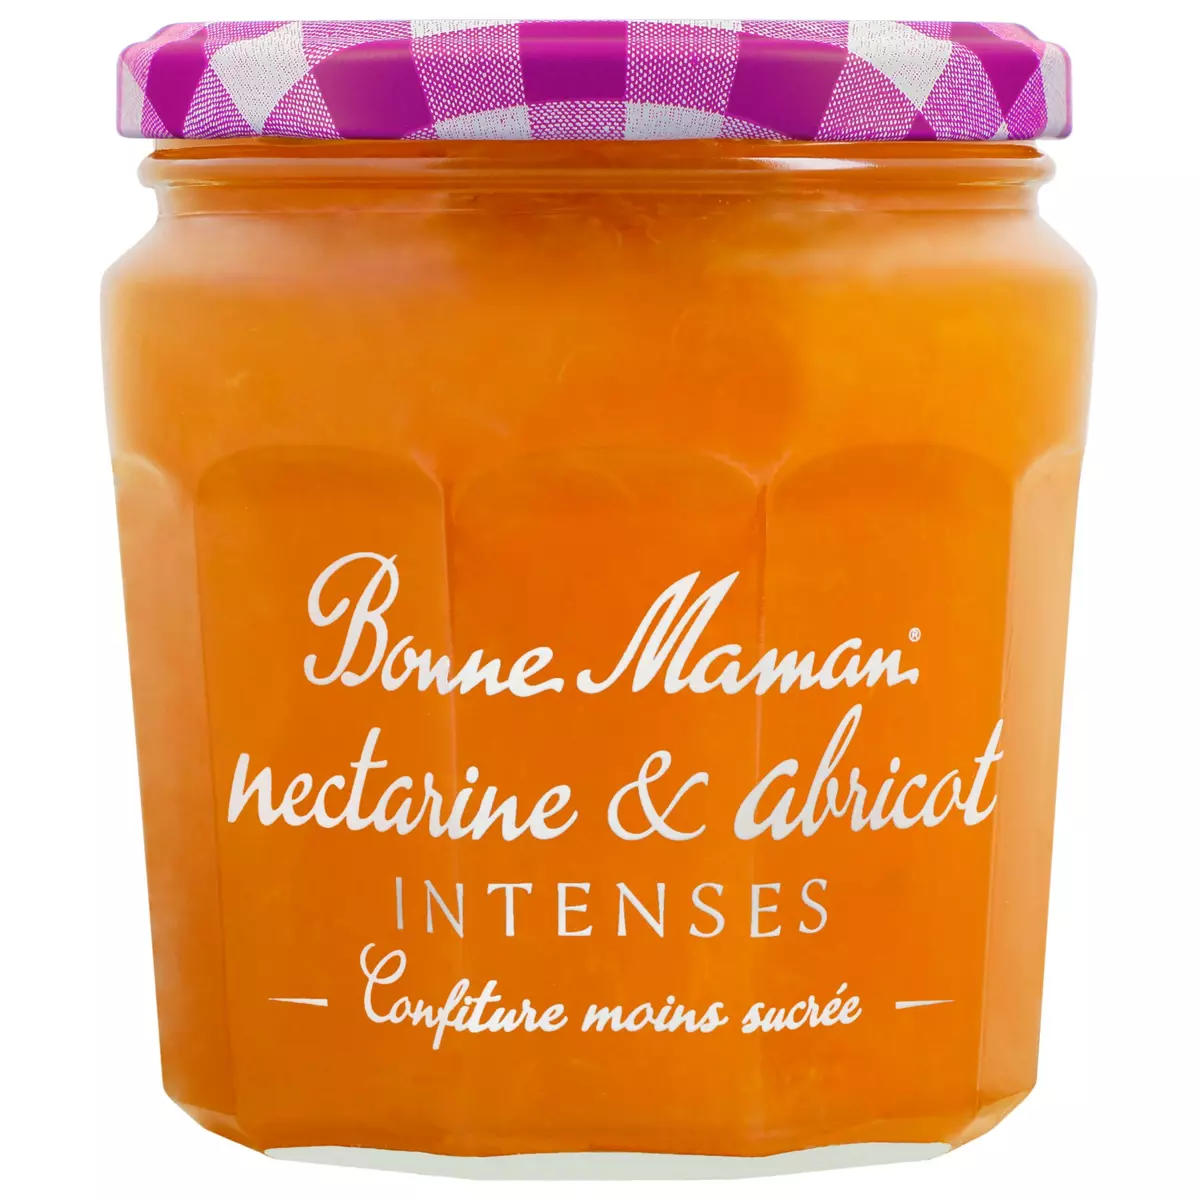 BONNE MAMAN Intenses Confiture extra de nectarines et abricots allégée 335g